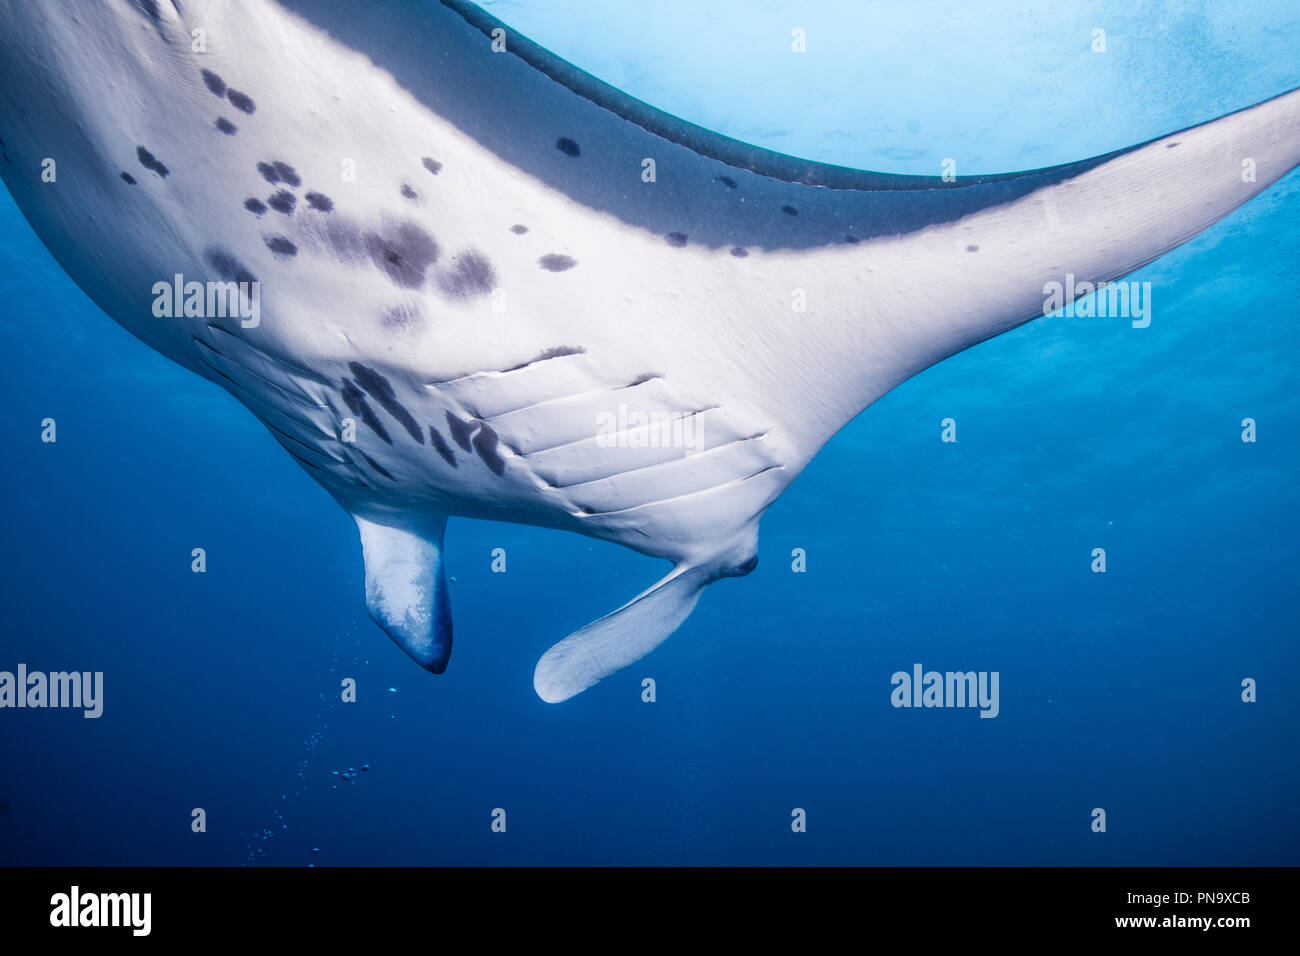 Manta ray. nuotare nell'oceano blu. Isola di Yap Gli Stati Federati di Micronesia (close up) Foto Stock